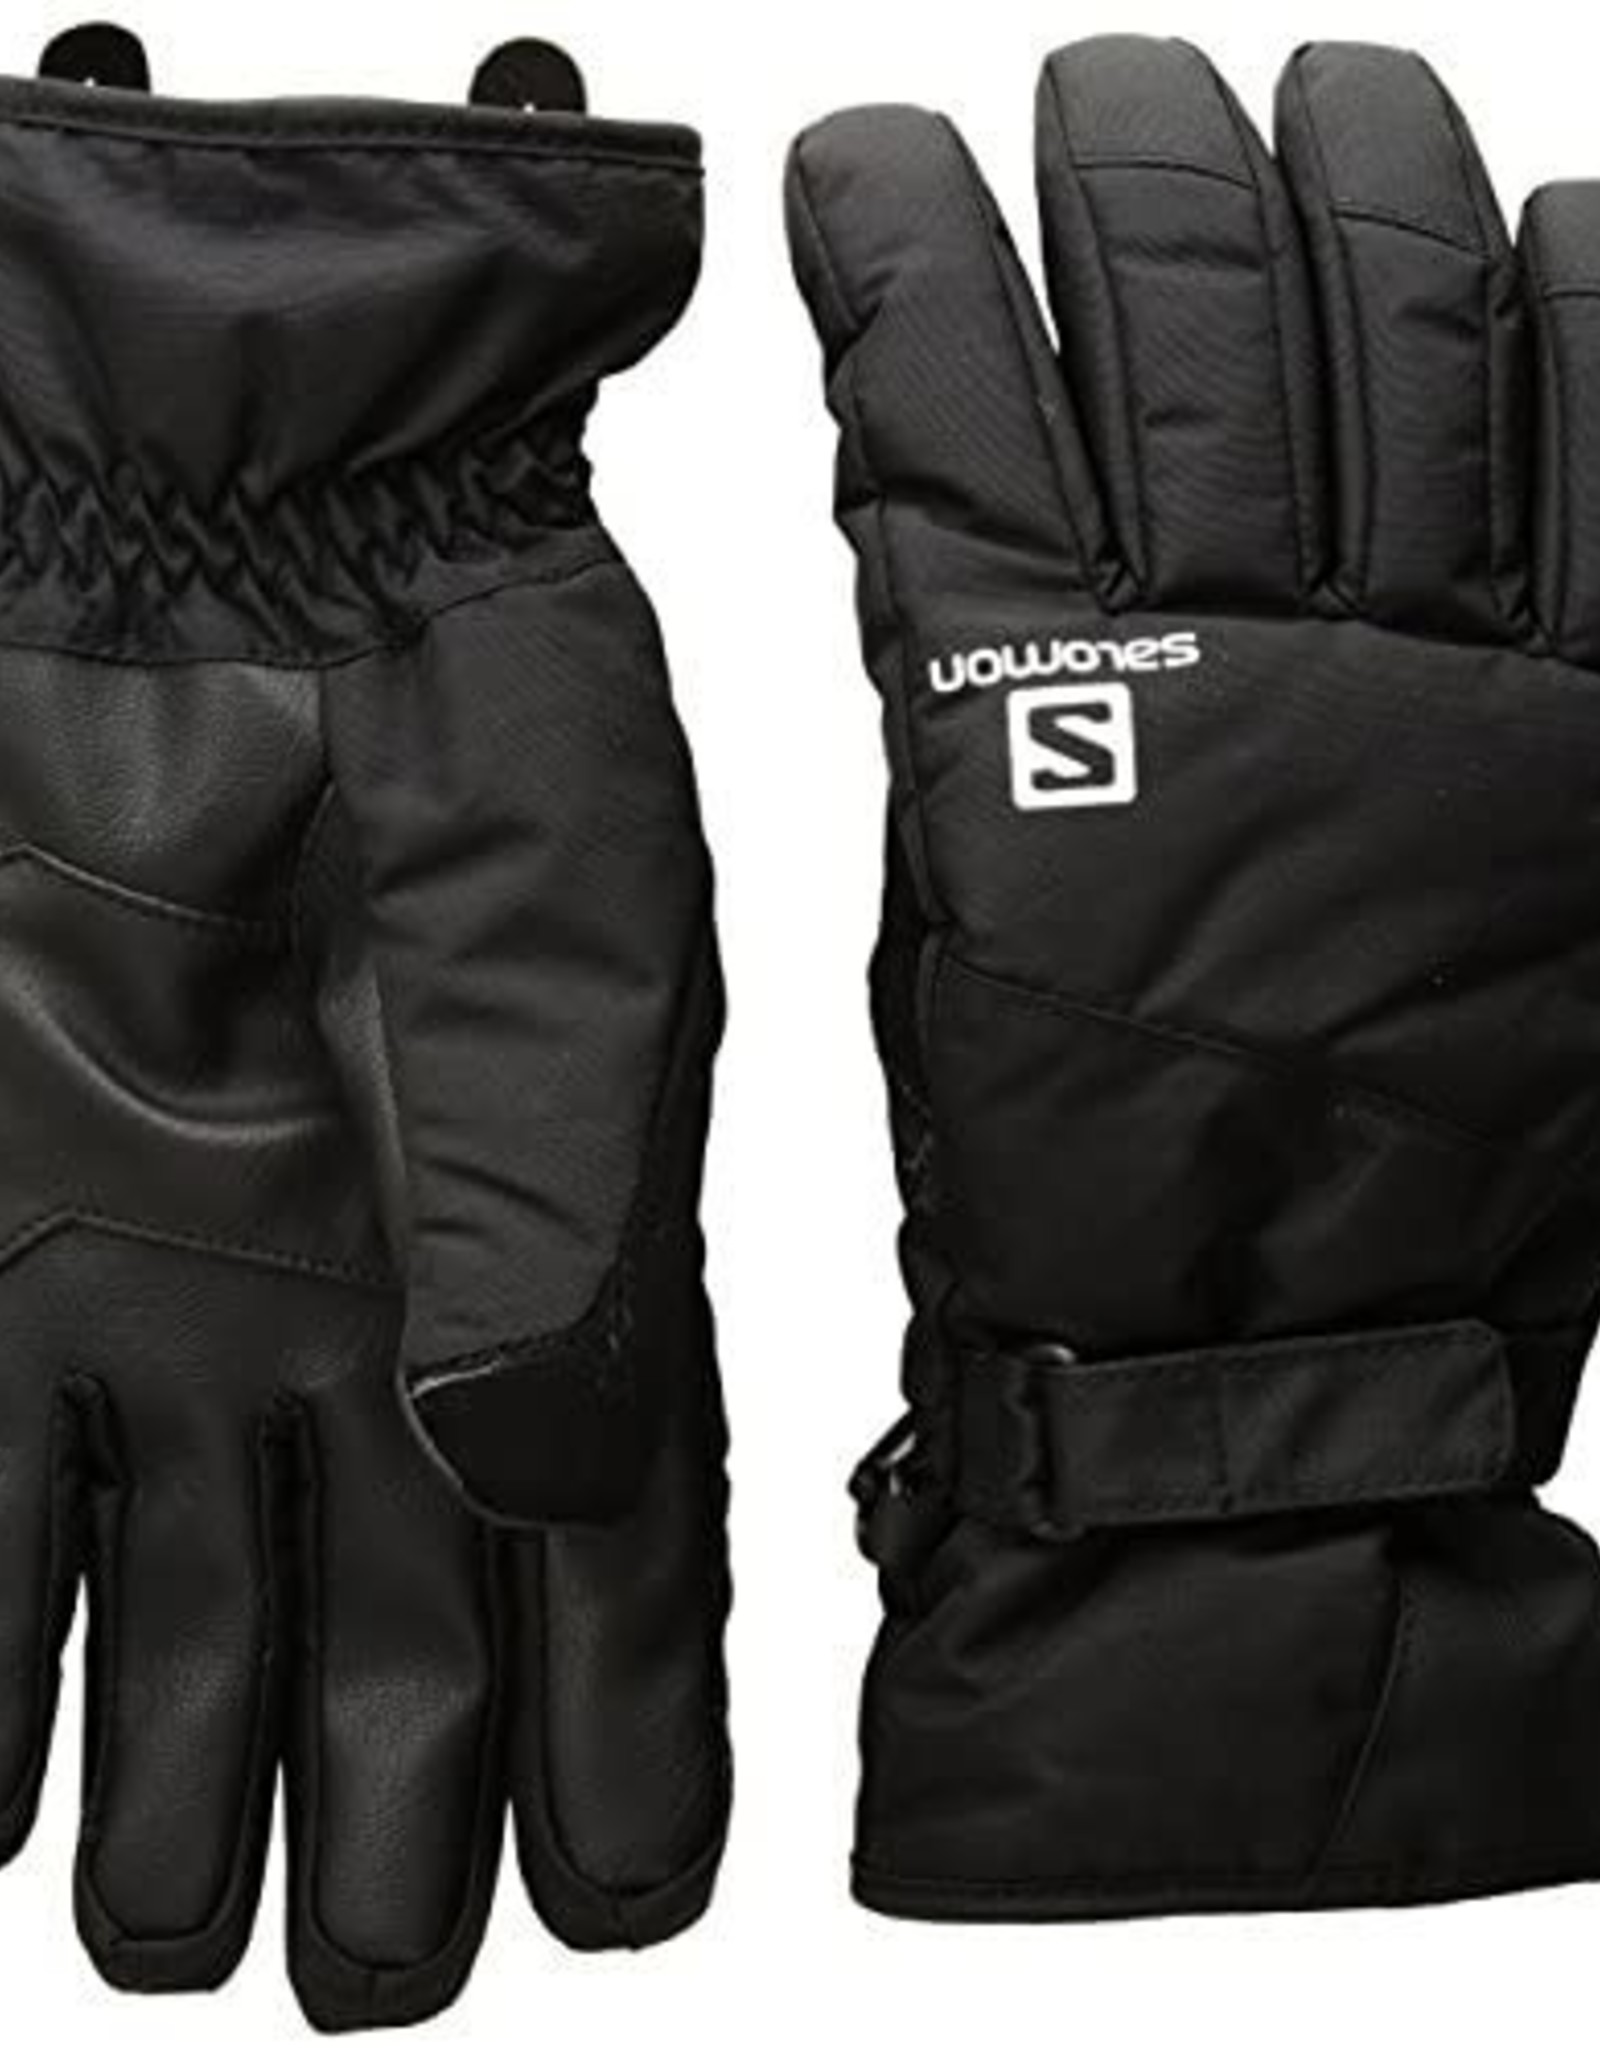 SALOMON Salomon Glove, Force Dry